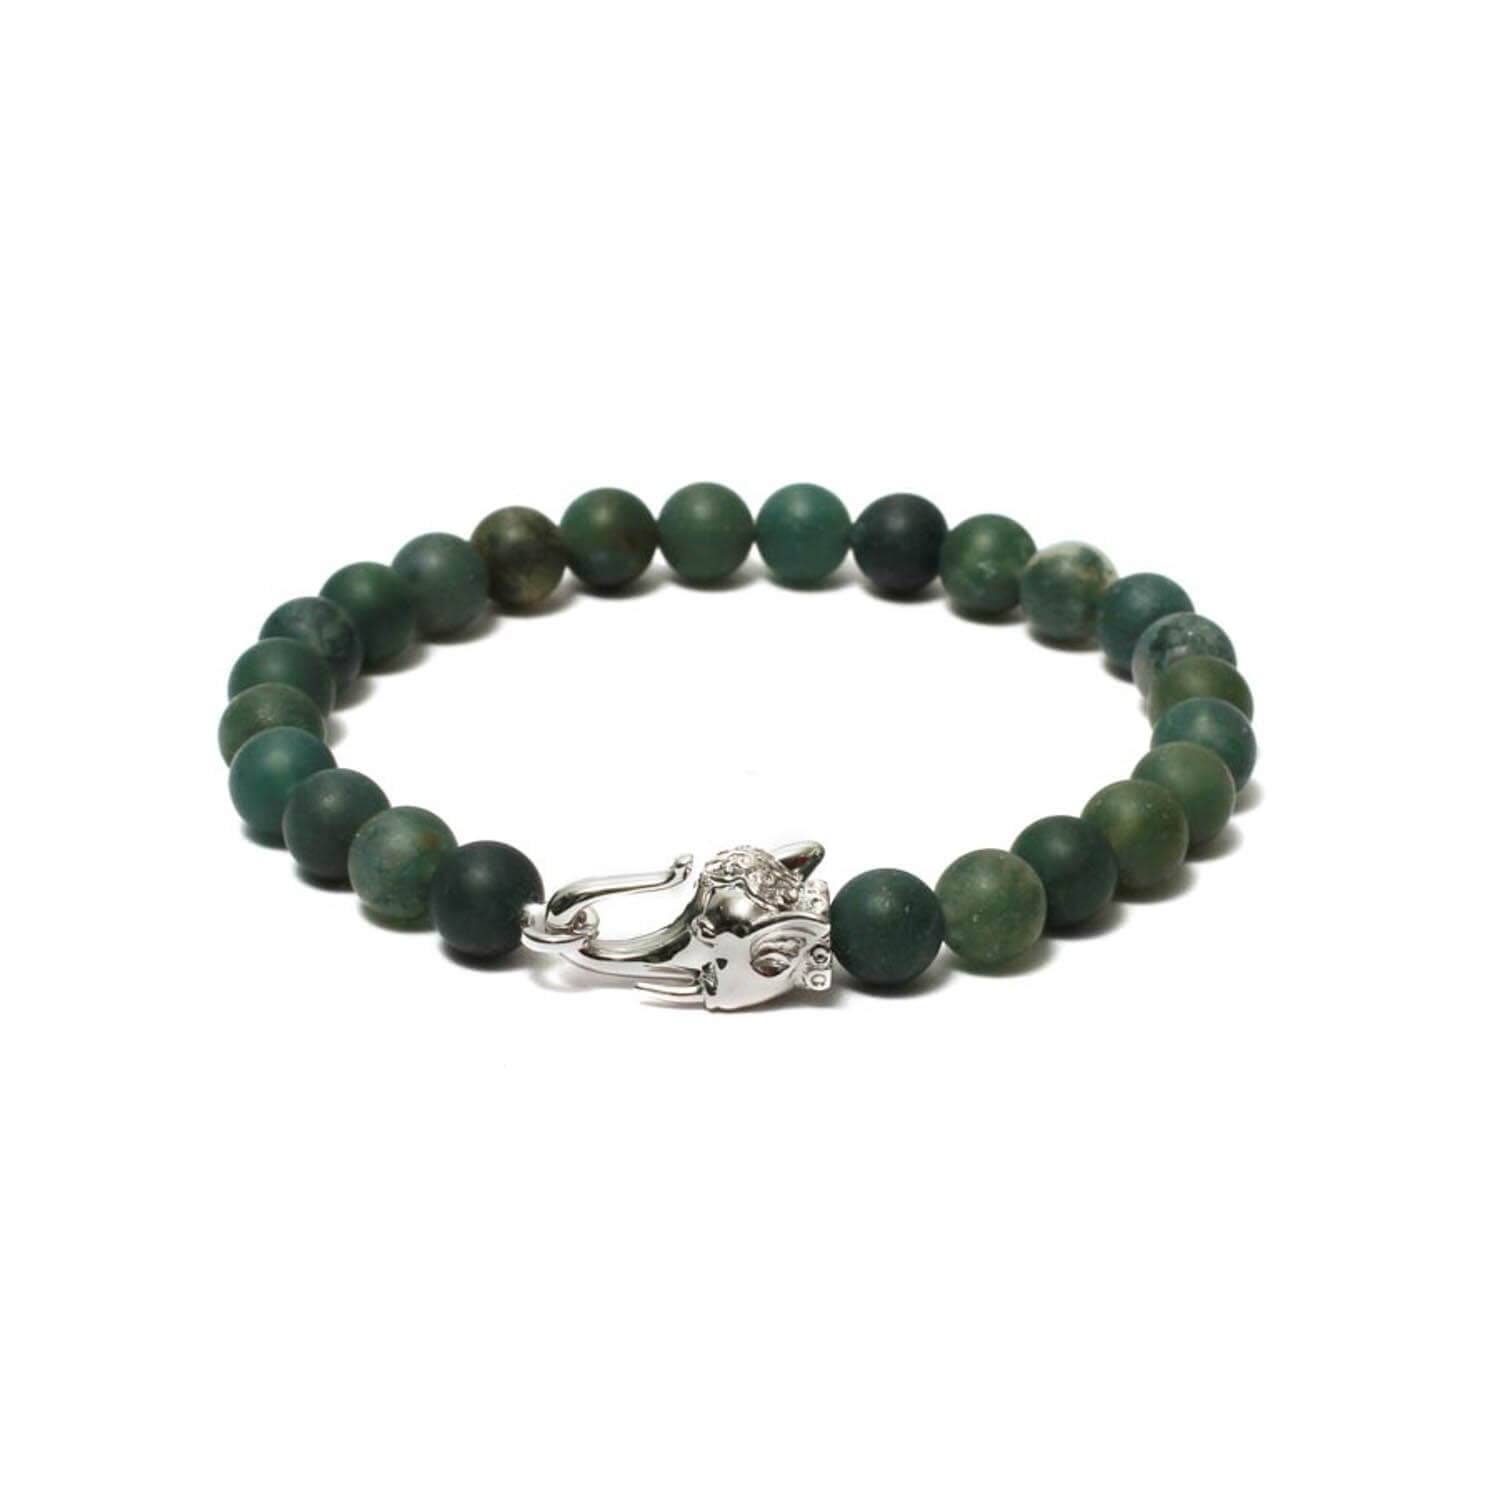 The Elephant Head   Bracelet in Moss Agate Gemstone beads